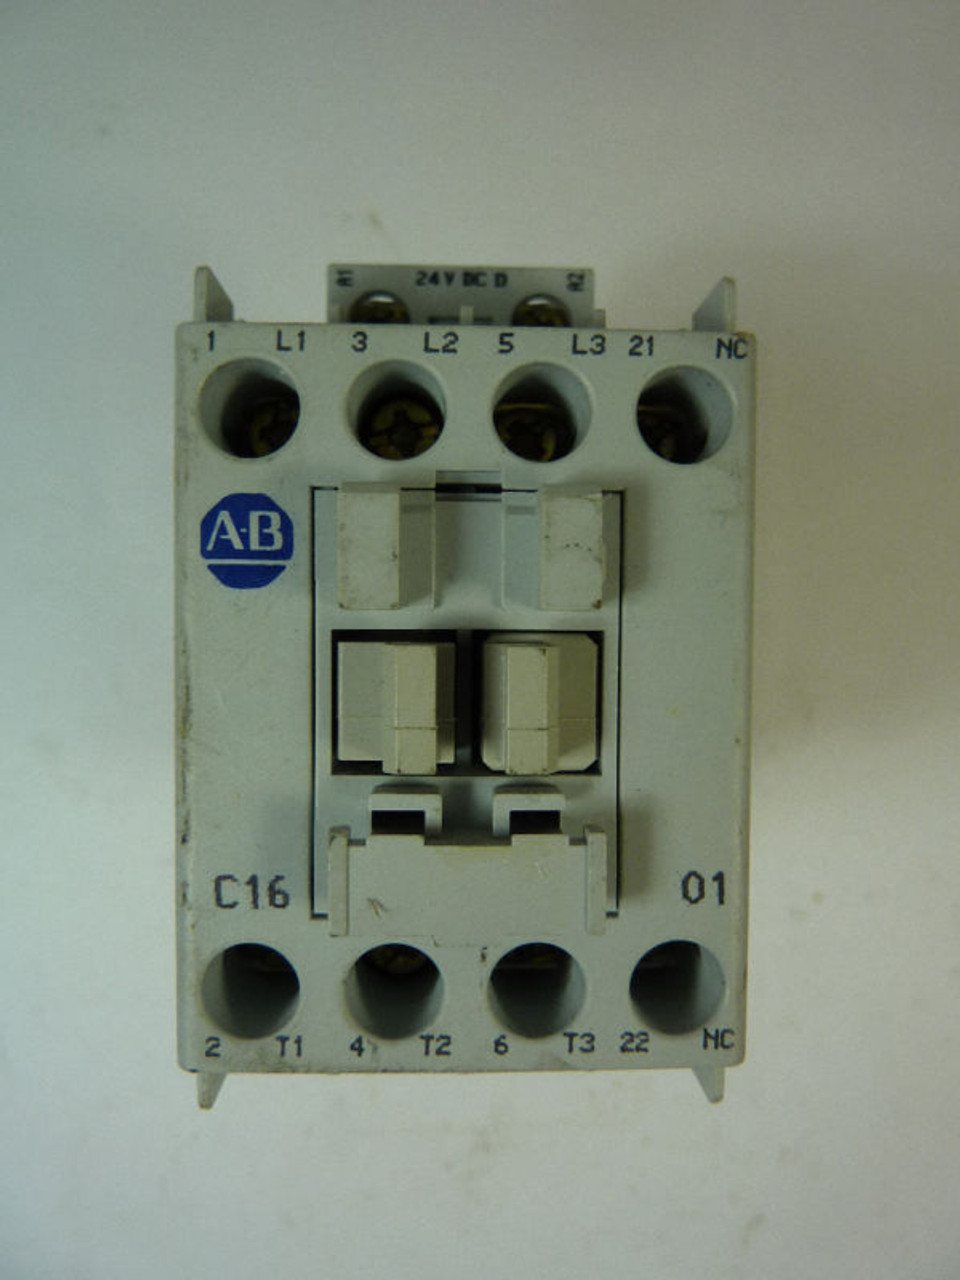 Allen-Bradley 100-C16ZJ01 Contactor 16 Amp 24VDC USED